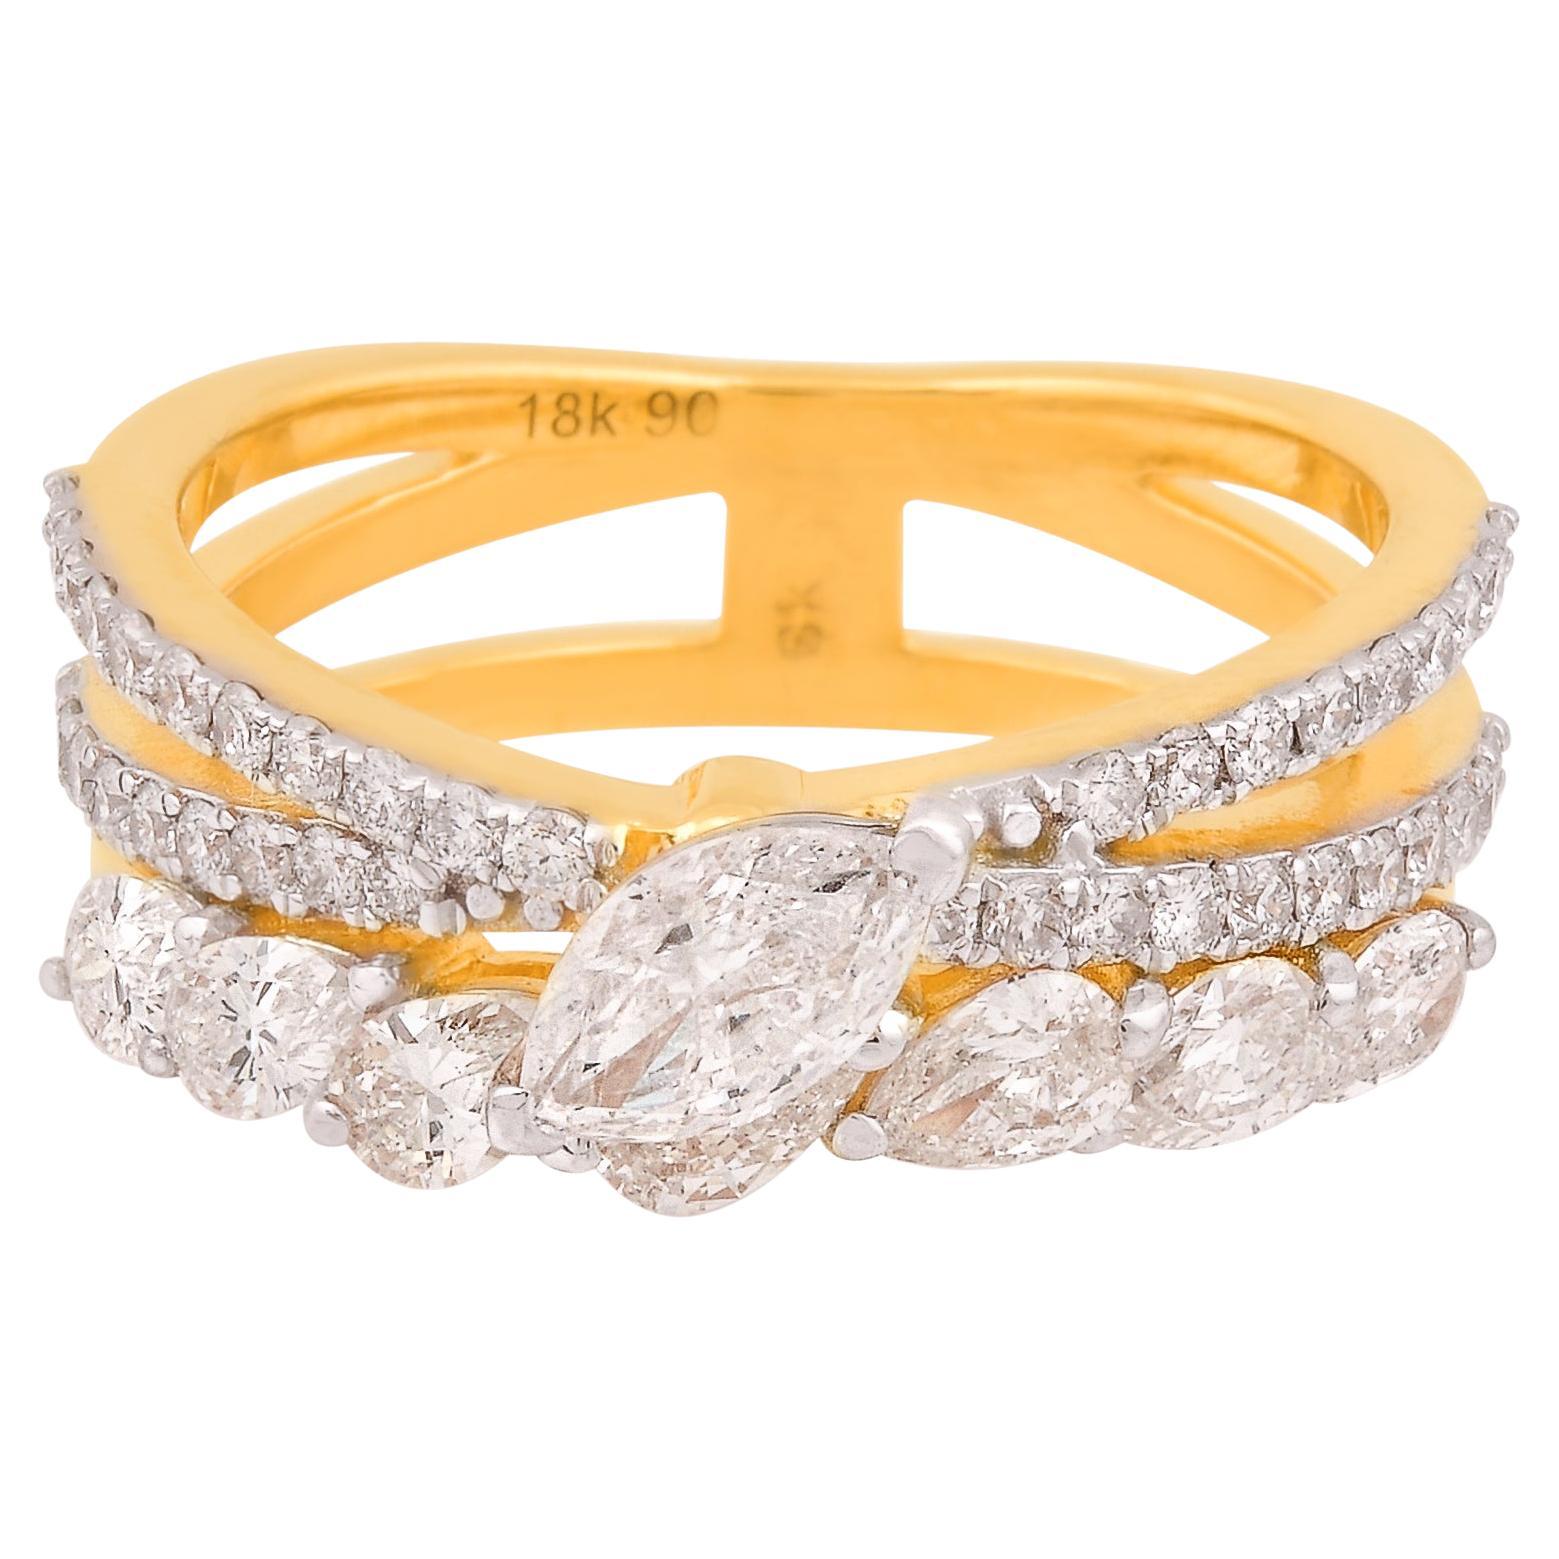 1.48 Carat SI Clarity HI Color Diamond Criss Cross Ring 18 Karat Yellow Gold